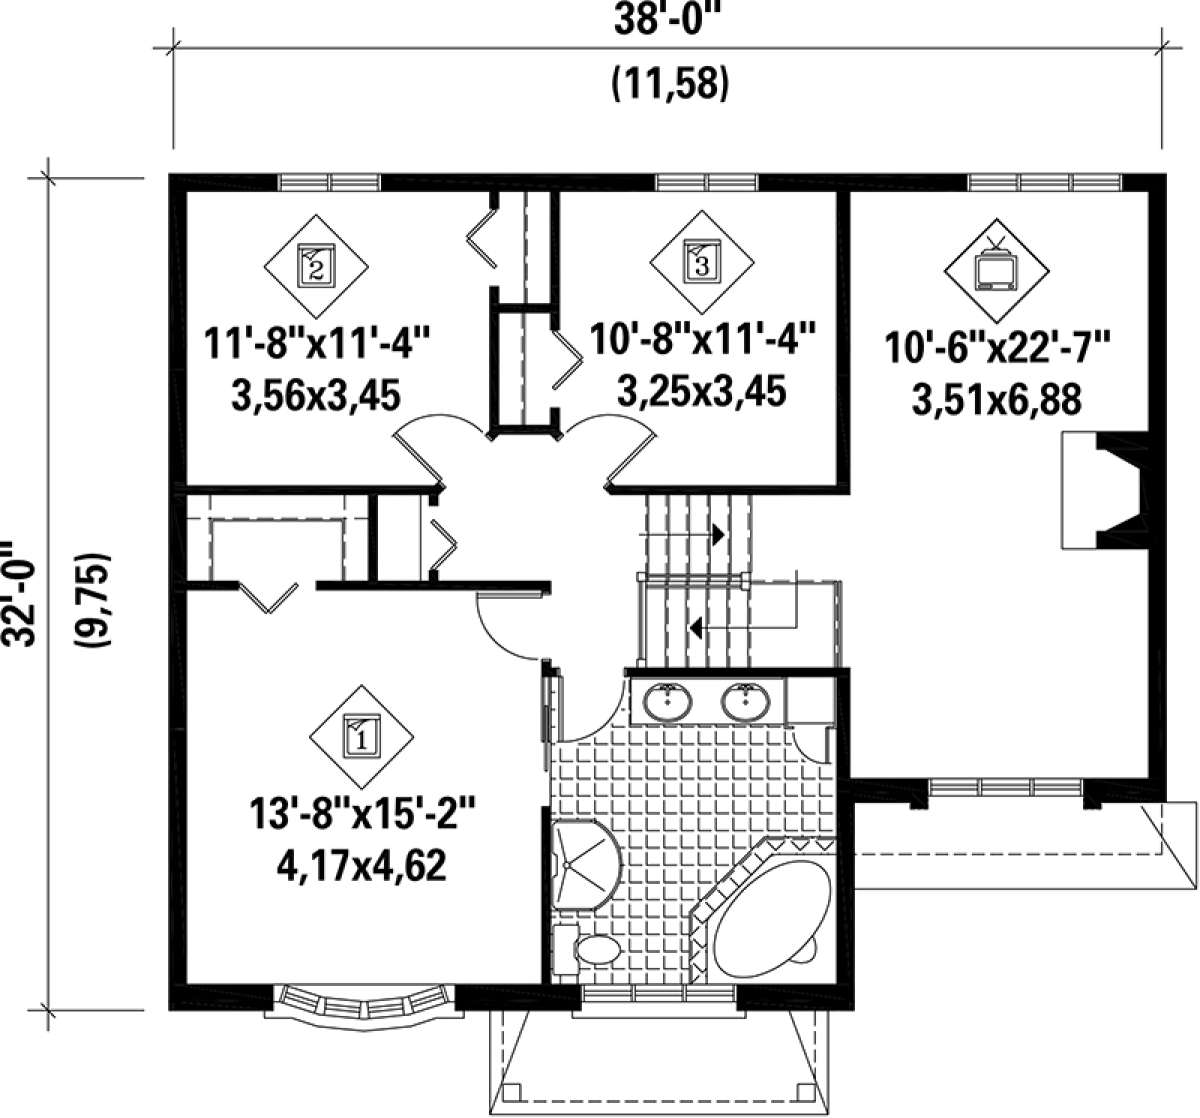 Upper Floor Plan for House Plan #6146-00117